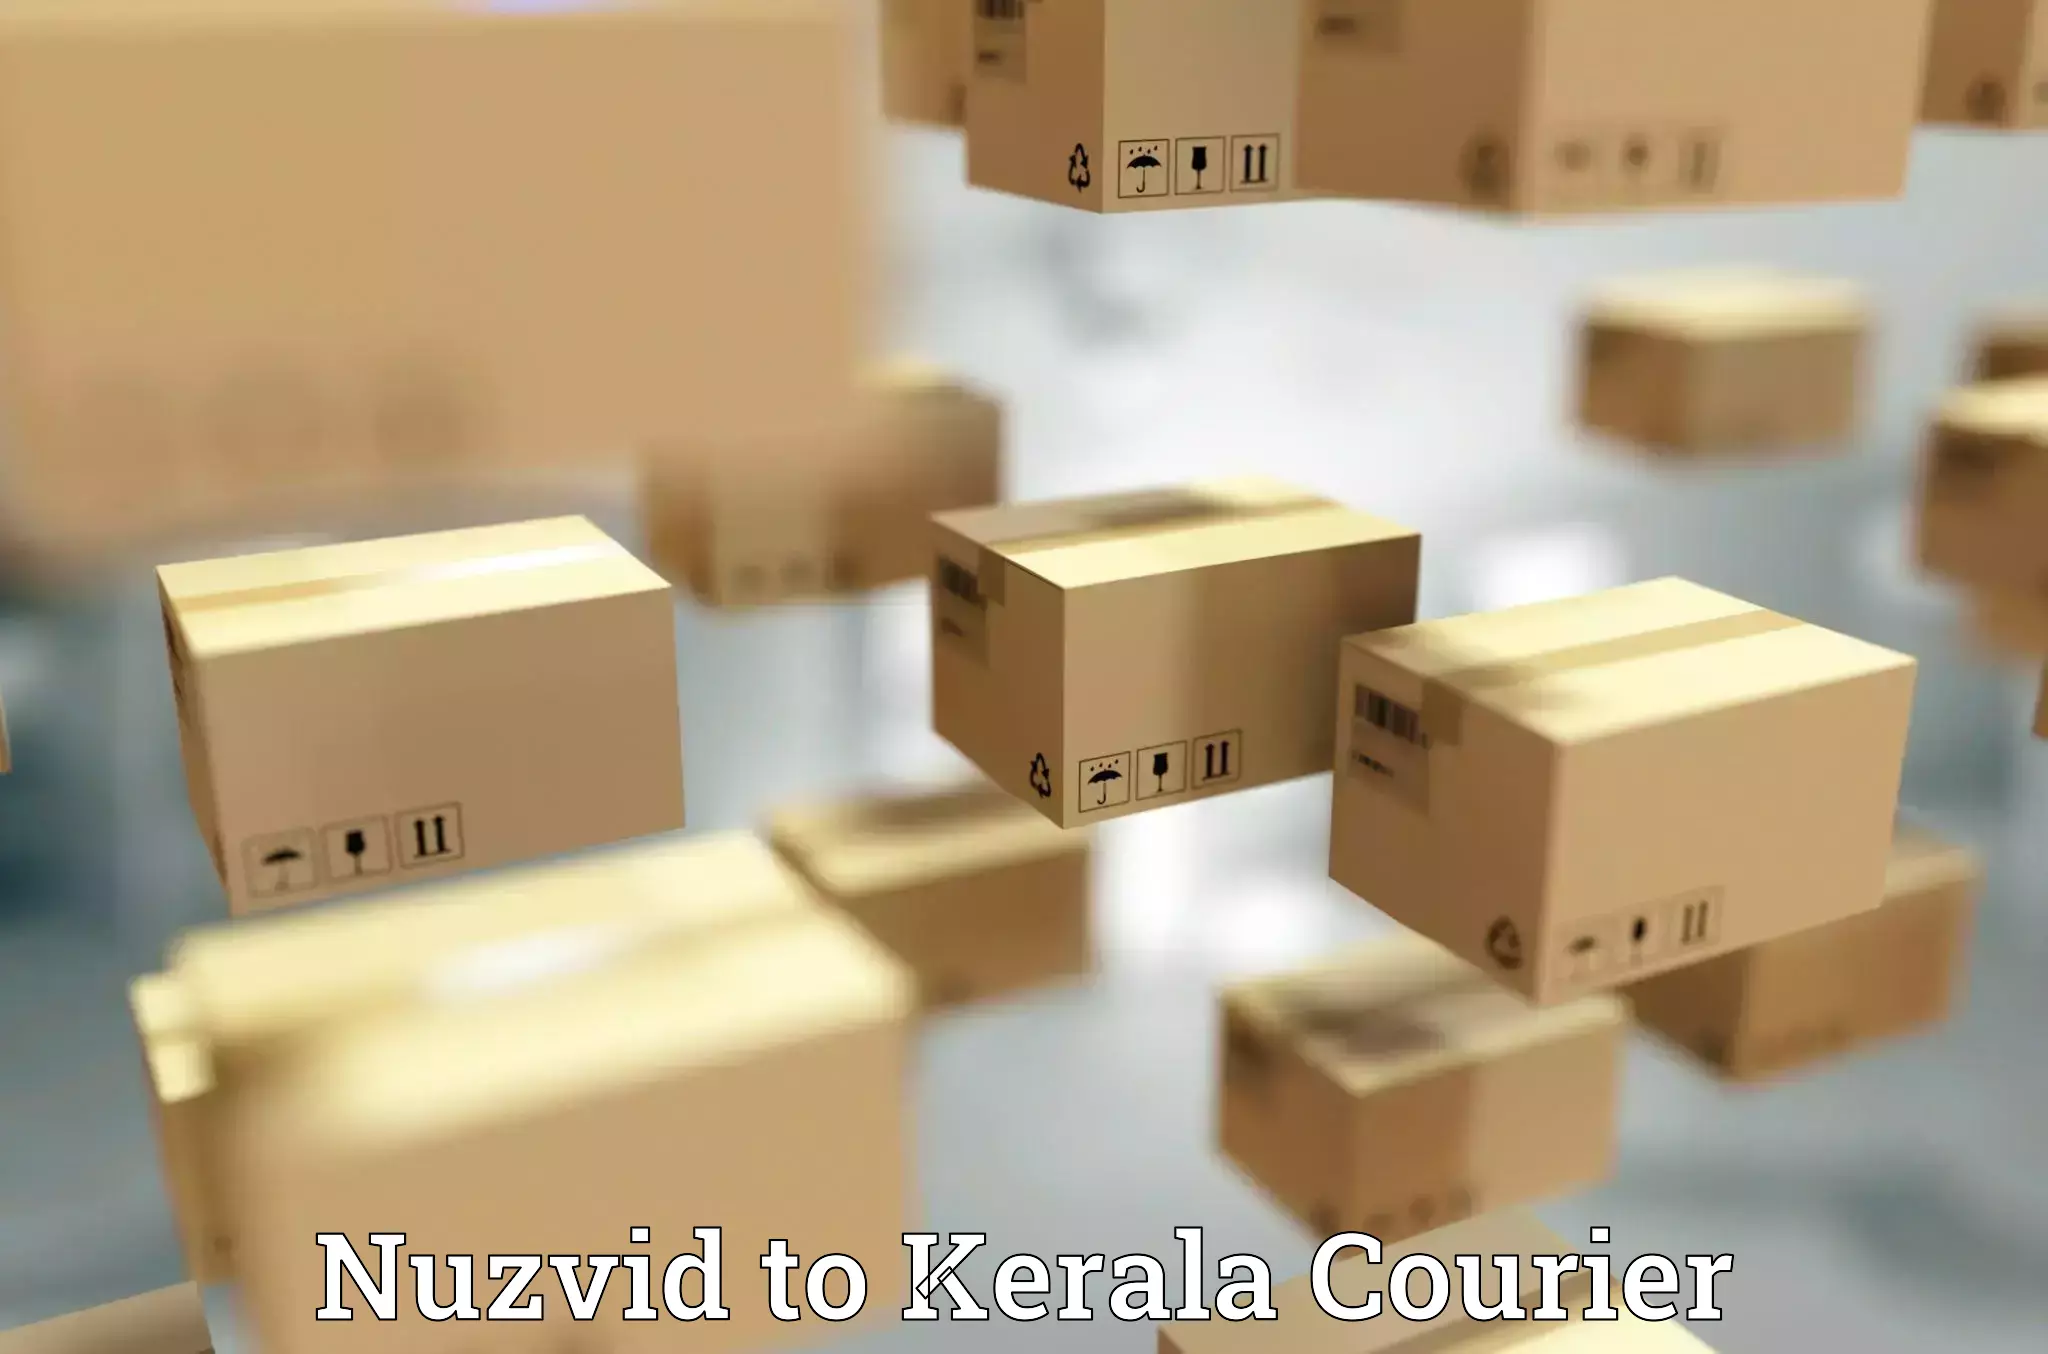 Courier service comparison Nuzvid to Tiruvalla